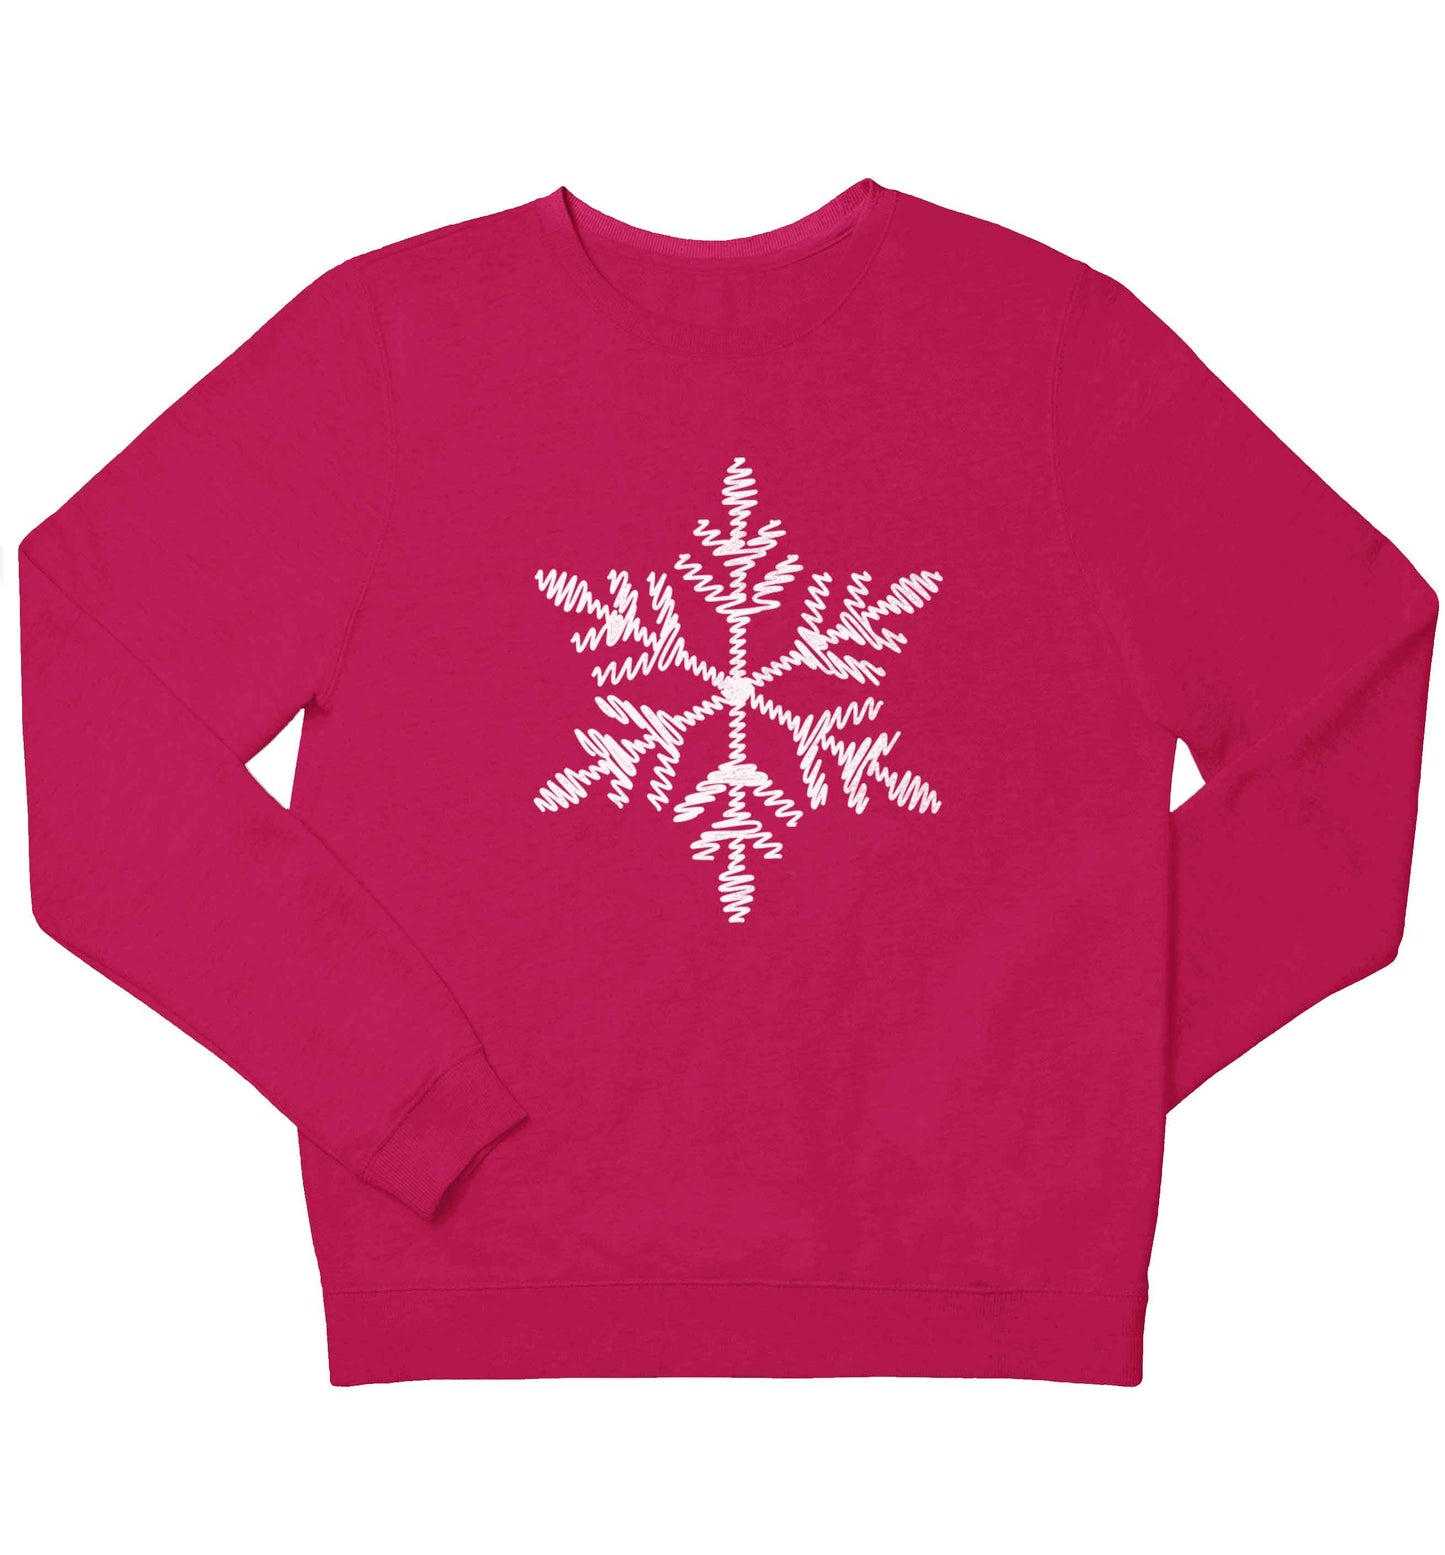 Snowflake children's pink sweater 12-13 Years